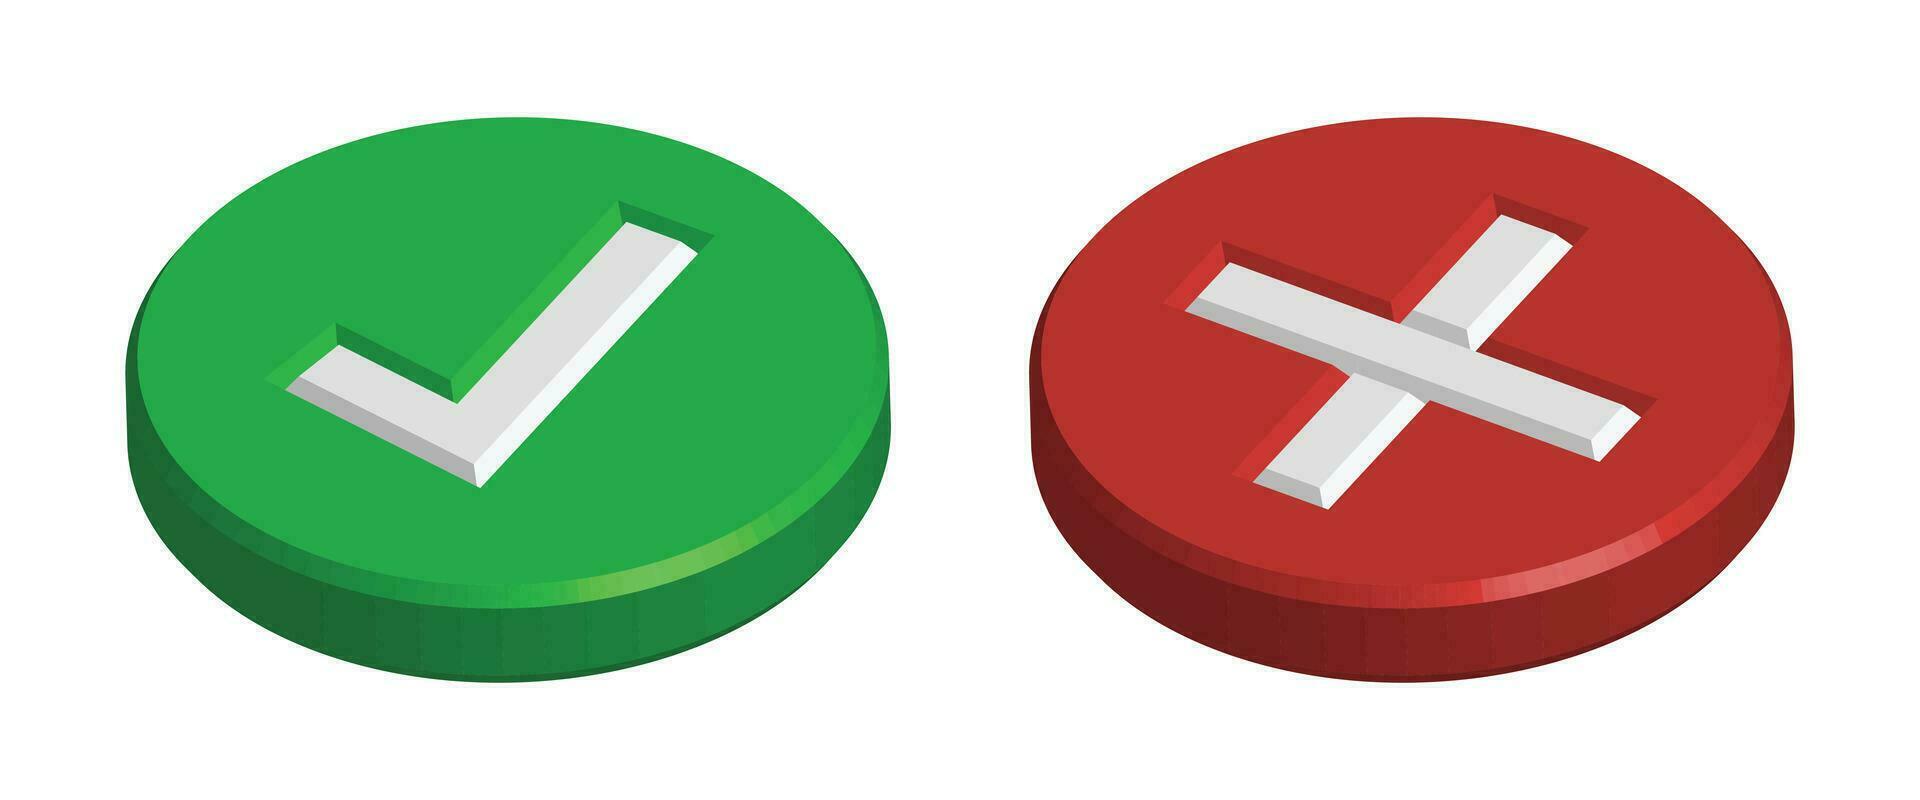 realistisk 3d grön rätt kolla upp mark ikon, fel bock ikon, glansig och skinande tickmark ikon och korsa mark ikon, grön och röd realistisk bock med korrekt fel eller x mark vektor illustration